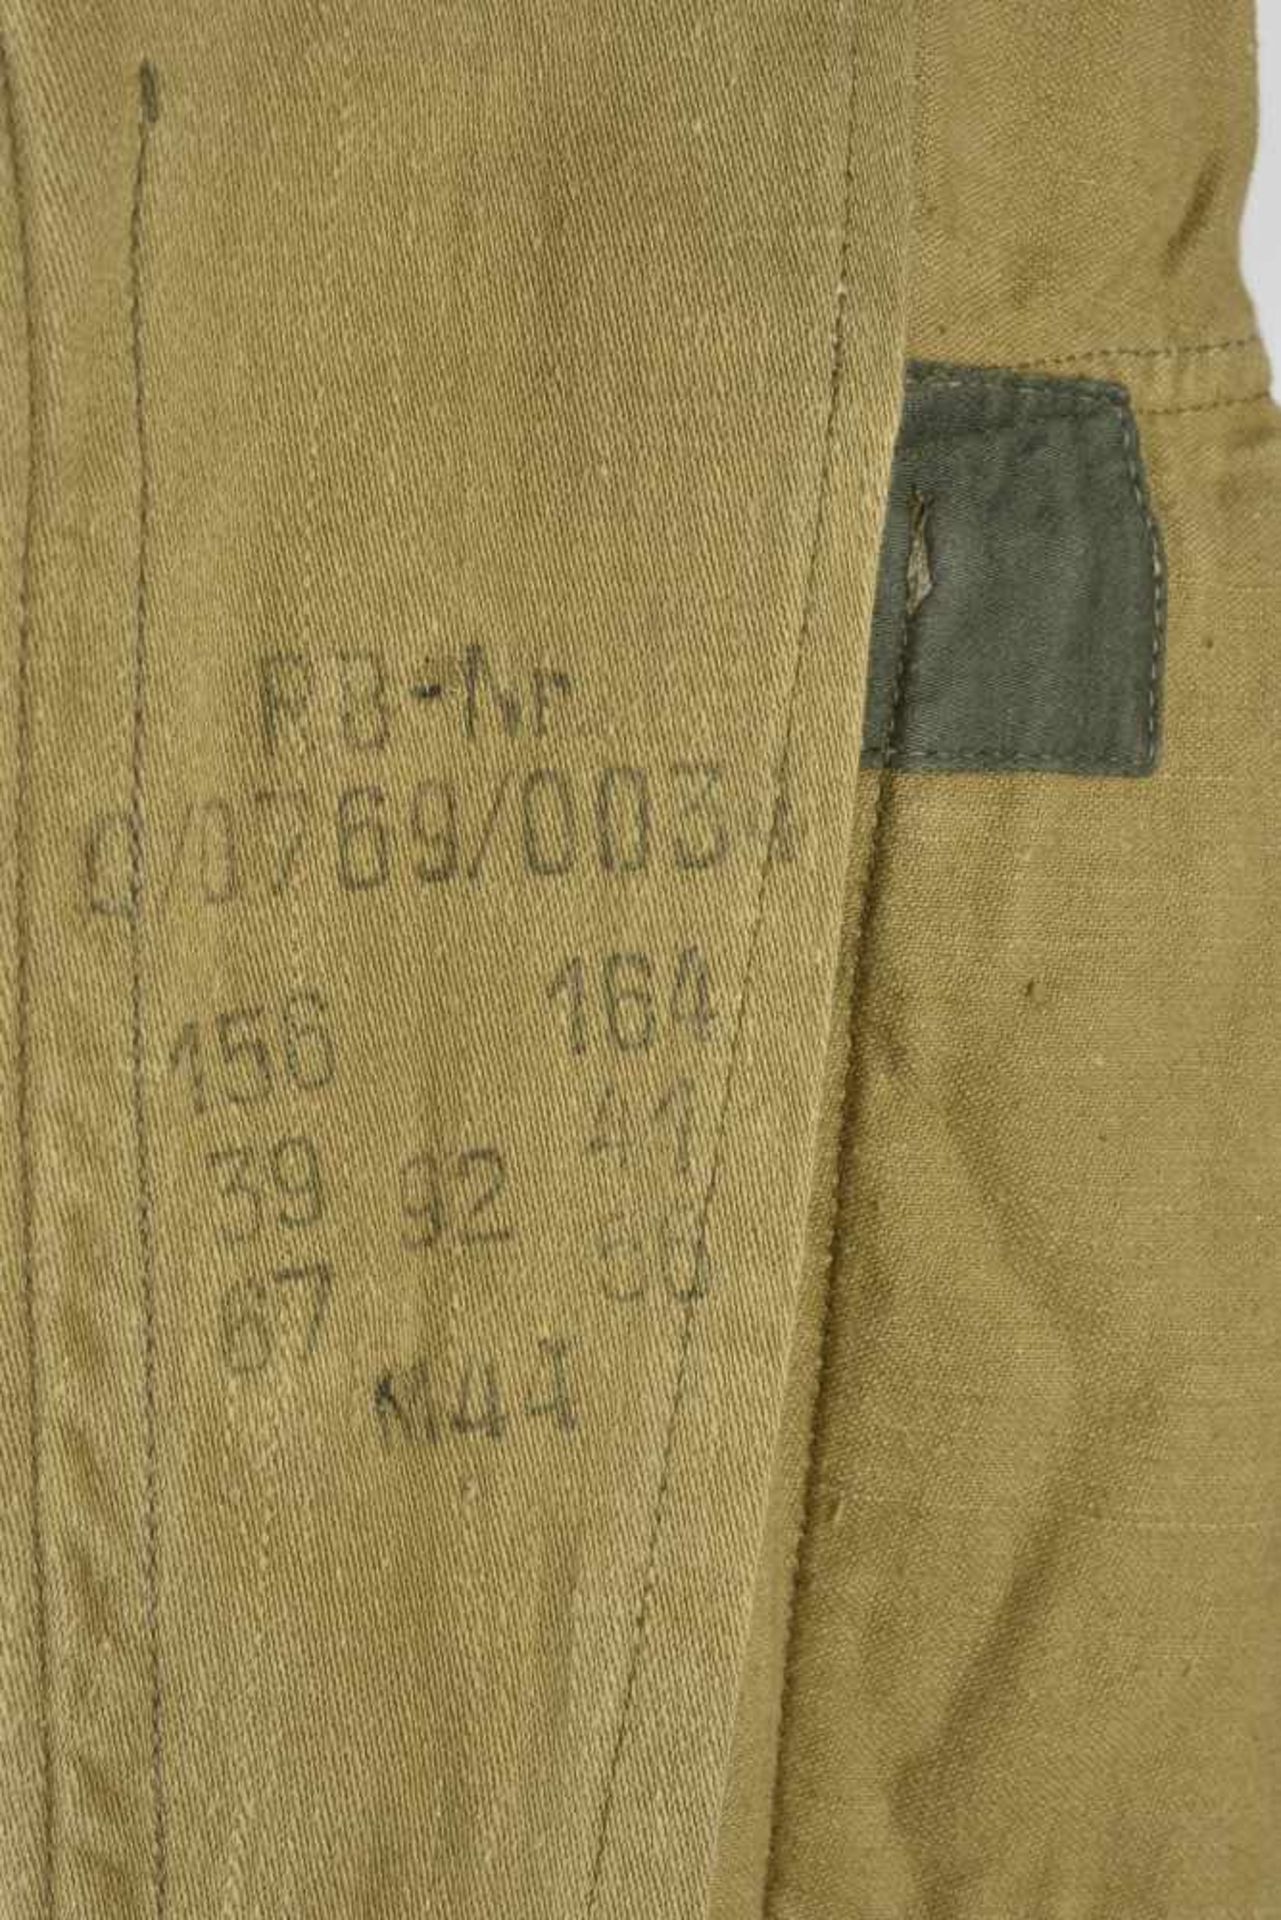 Veste tropical de la Waffen SSVareuse en tissu coton sable, tous les boutons sont présents. - Bild 3 aus 4